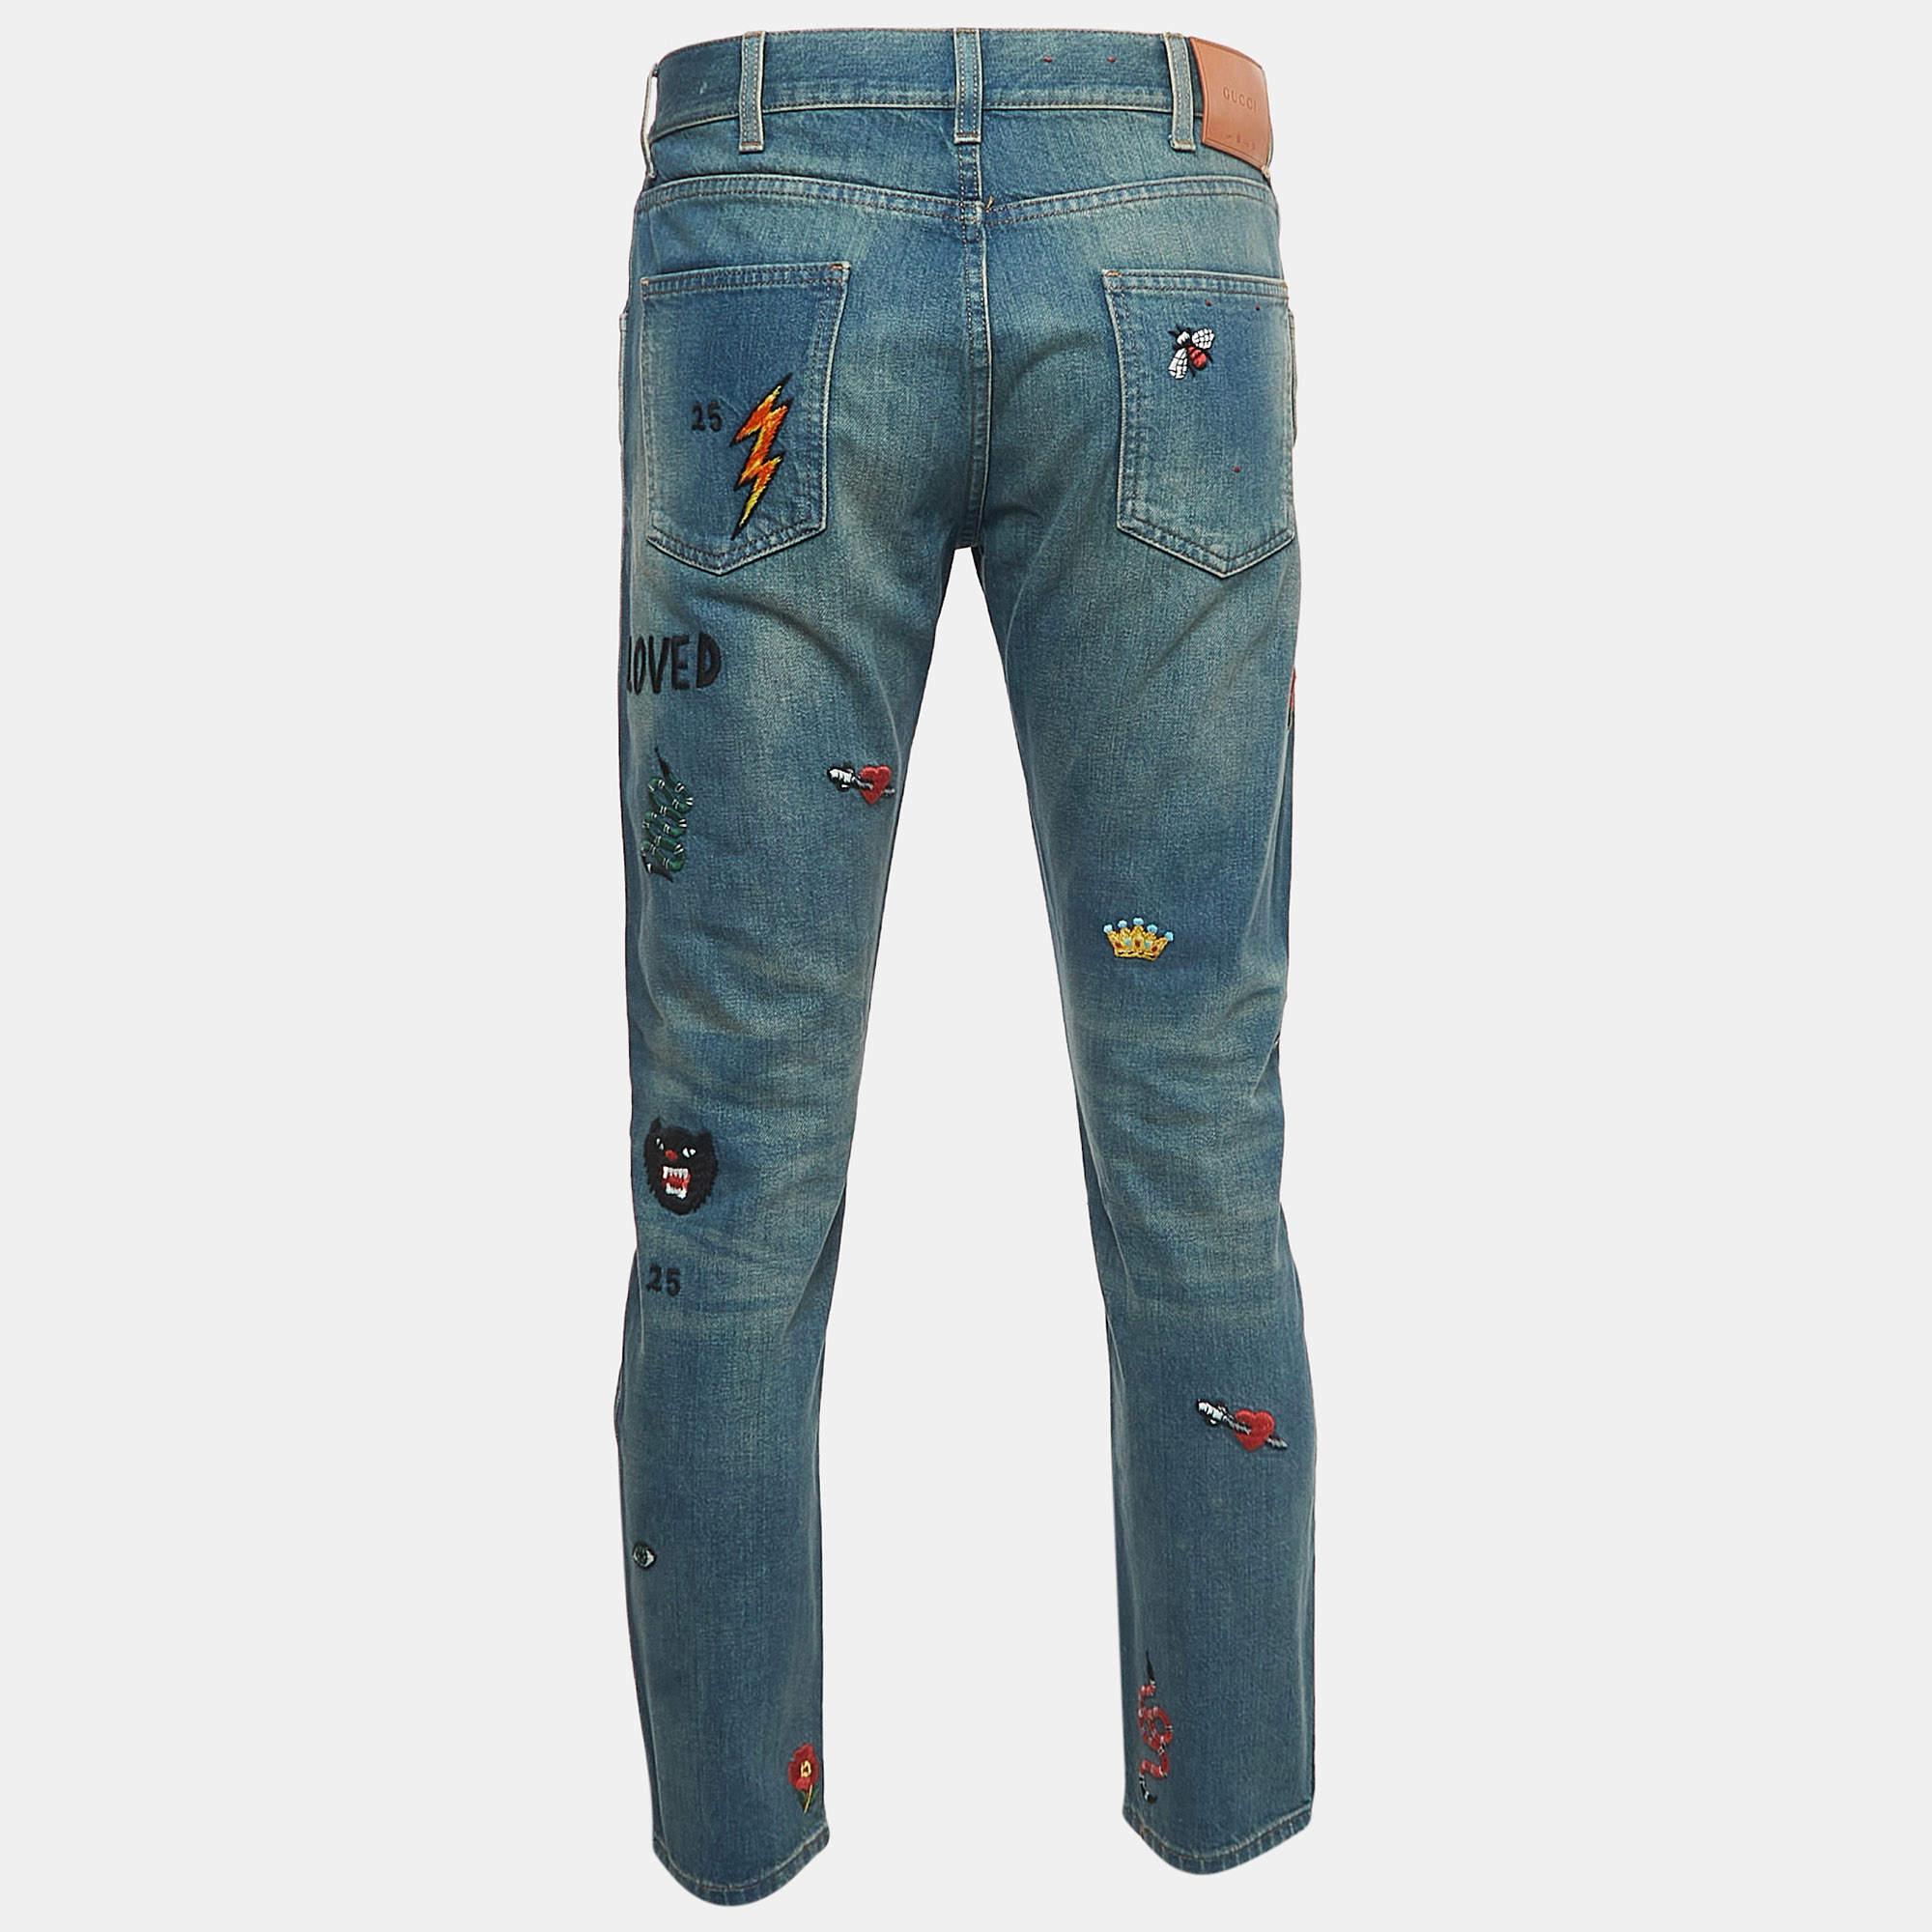 Eine tolle Jeans wie diese darf in keinem Kleiderschrank fehlen. Das Paar ist aus besten MATERIALEN geschneidert und zeichnet sich durch klassische Details, einen einfachen Verschluss und Taschen aus. Kombinieren Sie es mit Ihren Freizeit-T-Shirts.

